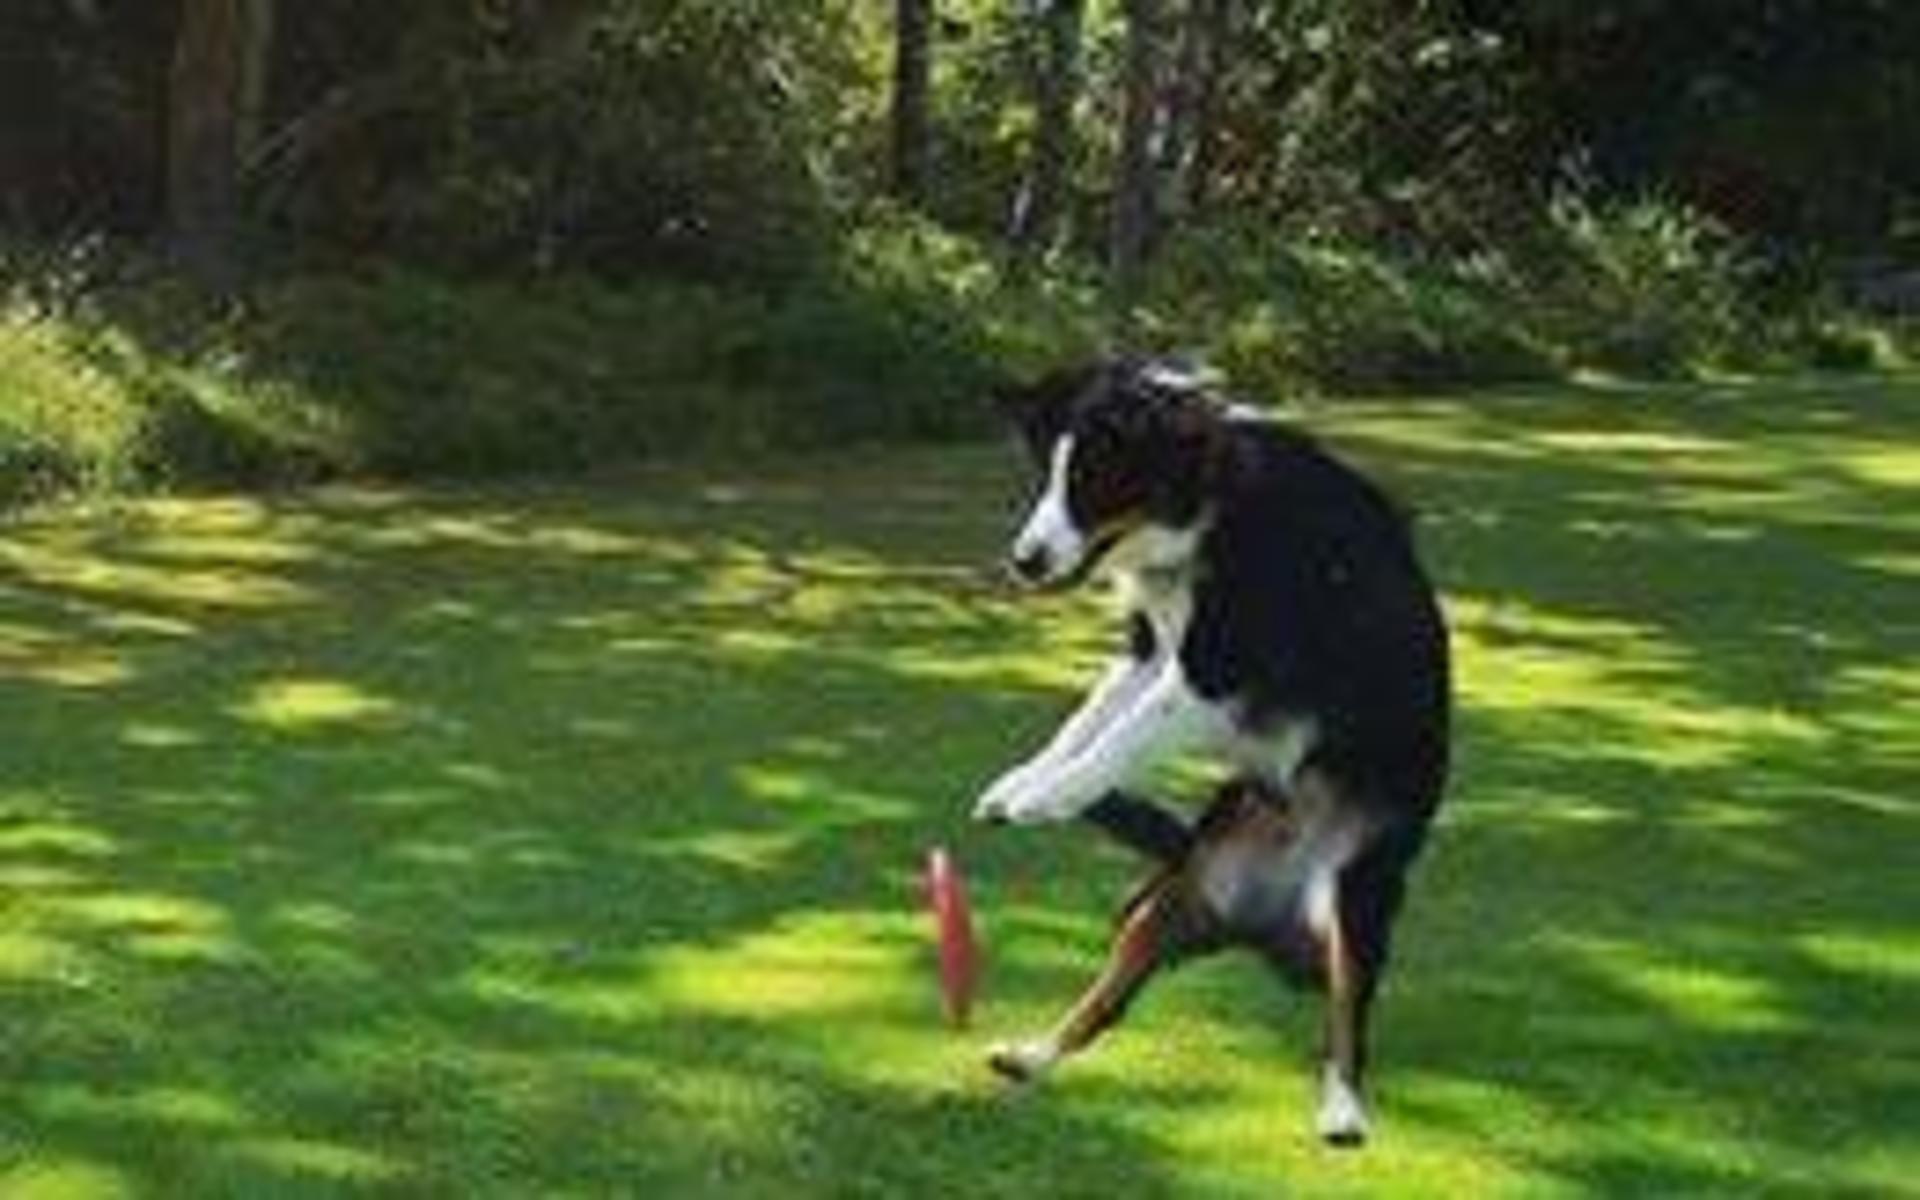 ”Det här är Flicka, en Australian Shepherd på 2,5 år, som verkligen älskar att träna. Särskilt sånt med fart i, som t ex frisbee.” skriver Agnetha Andersson.